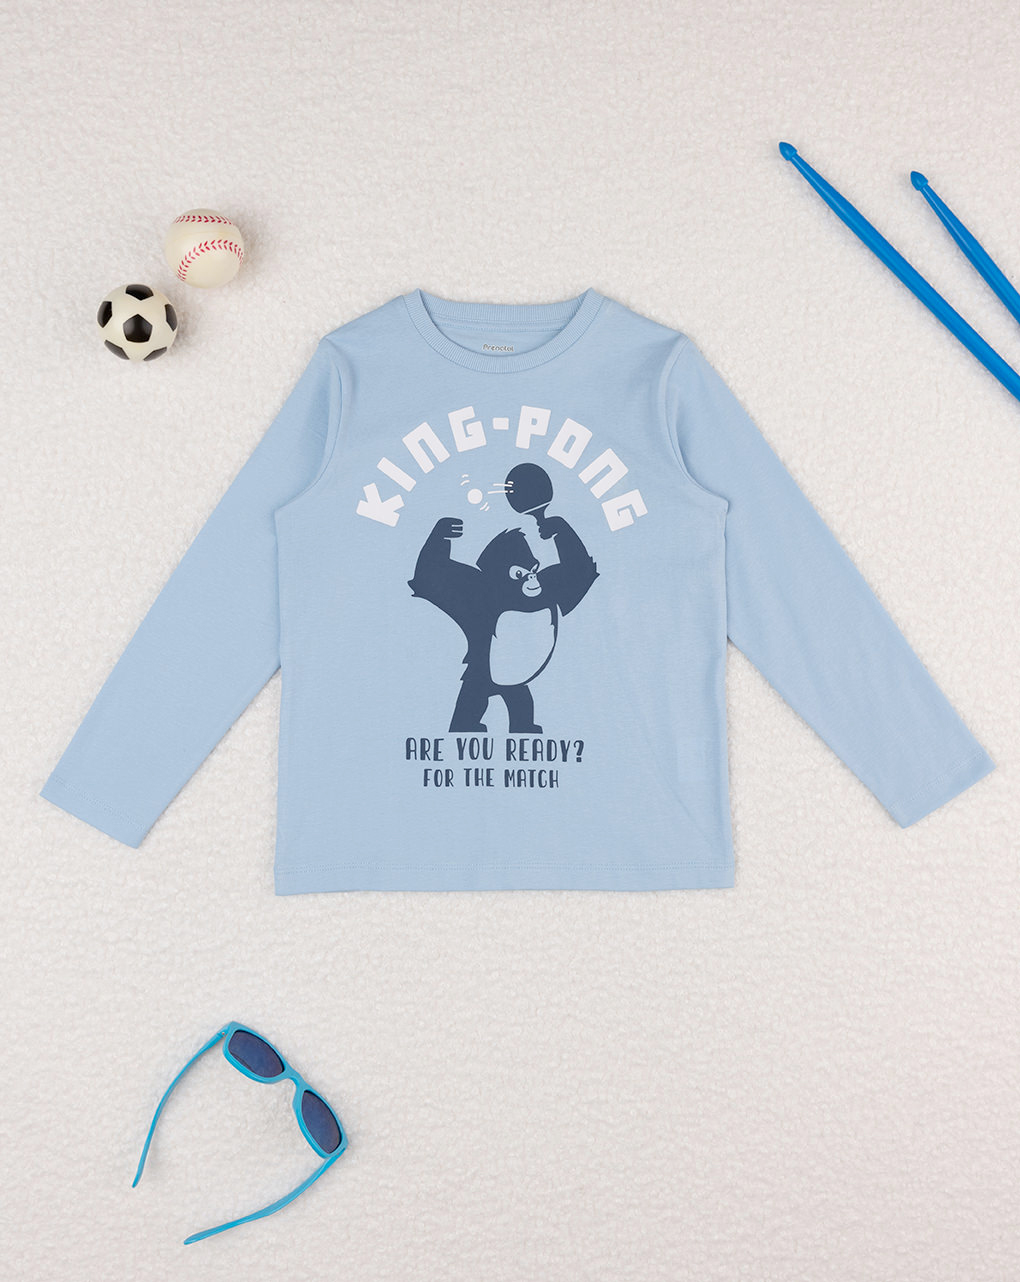 παιδική μπλούζα γαλάζια king-pong για αγόρι